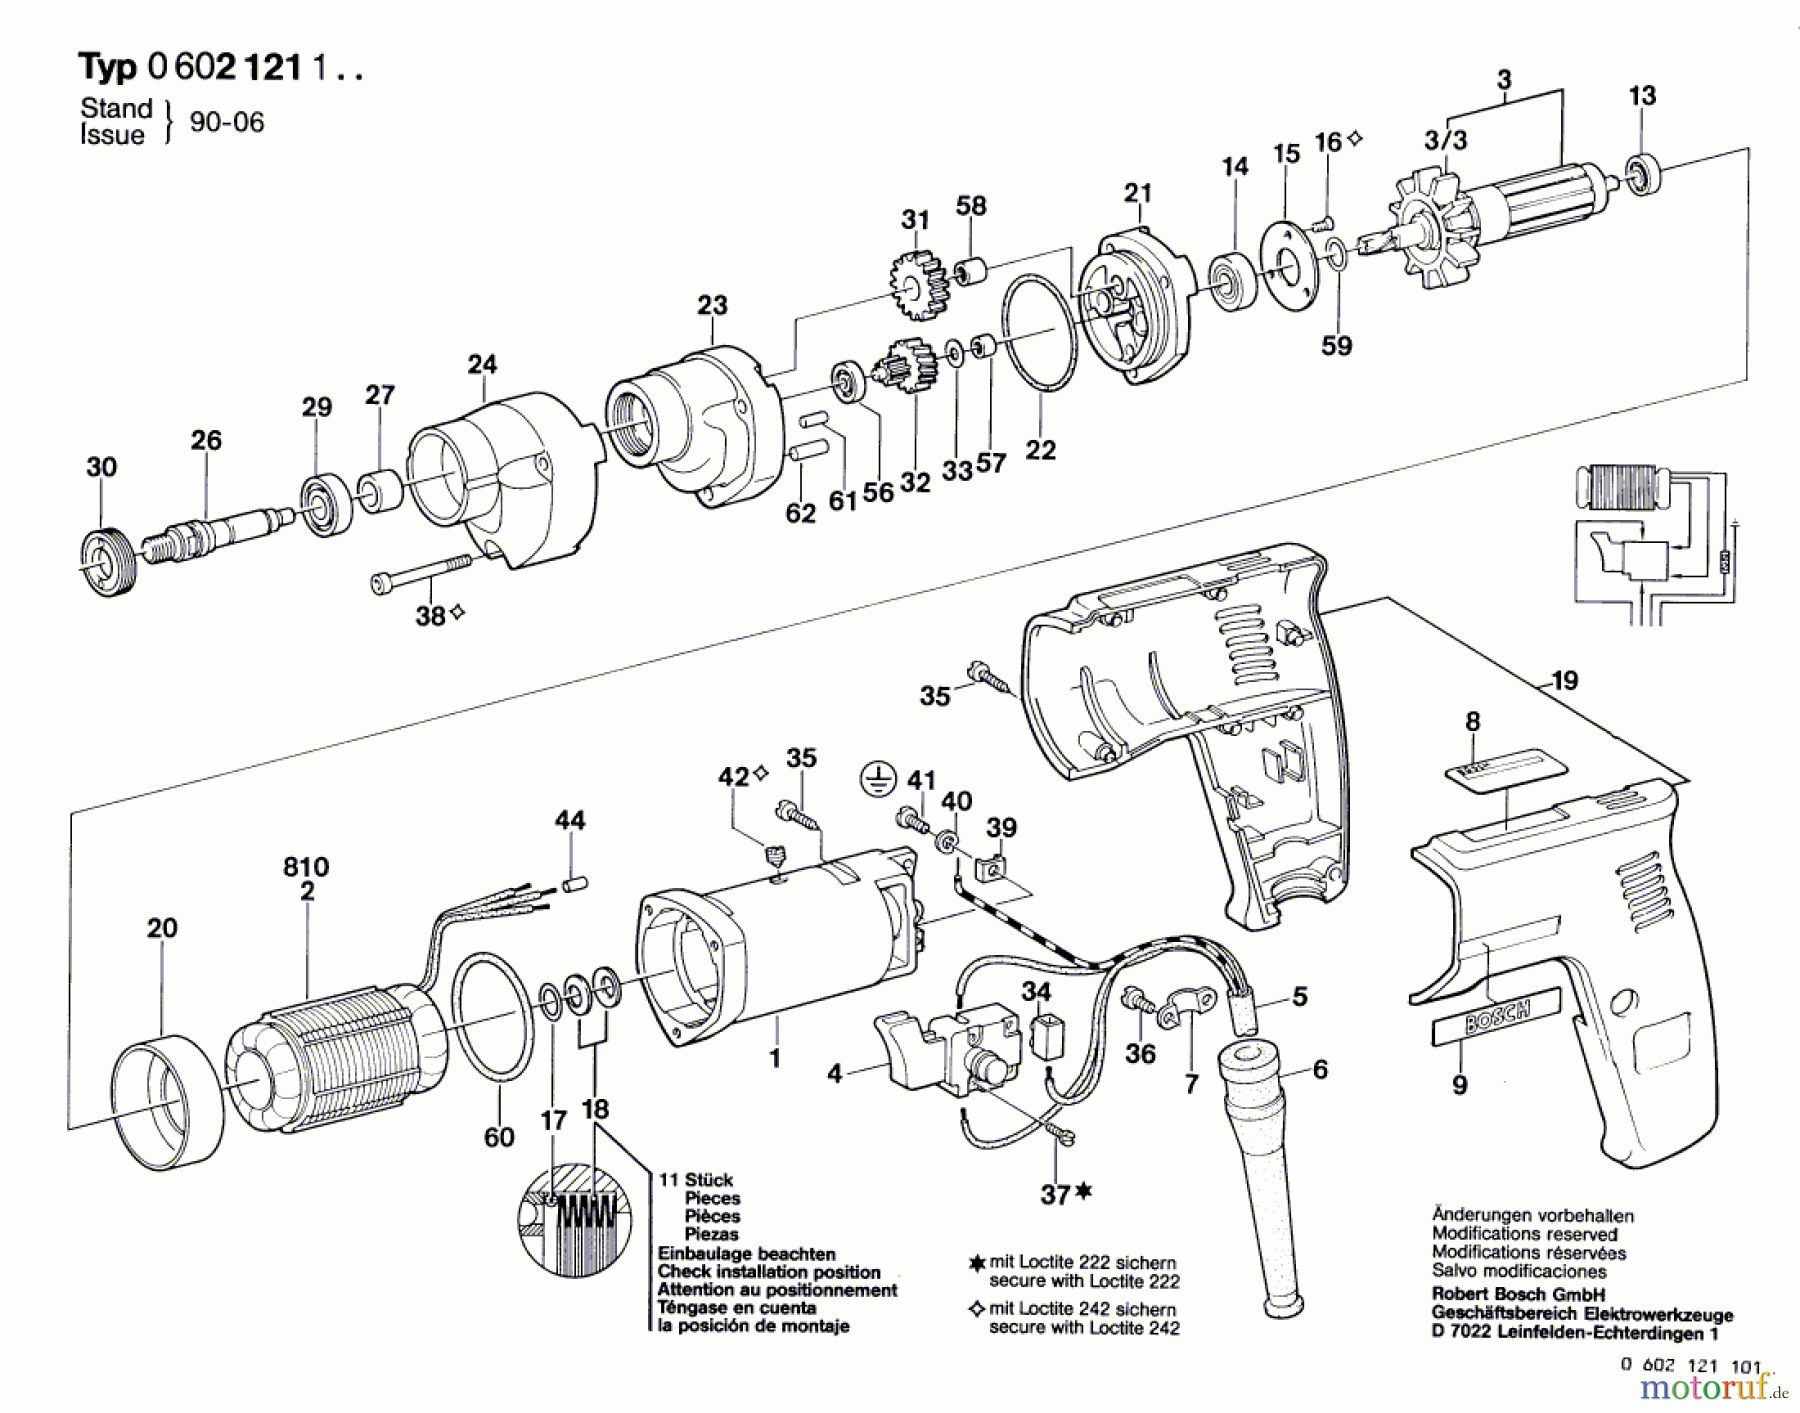  Bosch Werkzeug Bohrmaschine GR.55 Seite 1